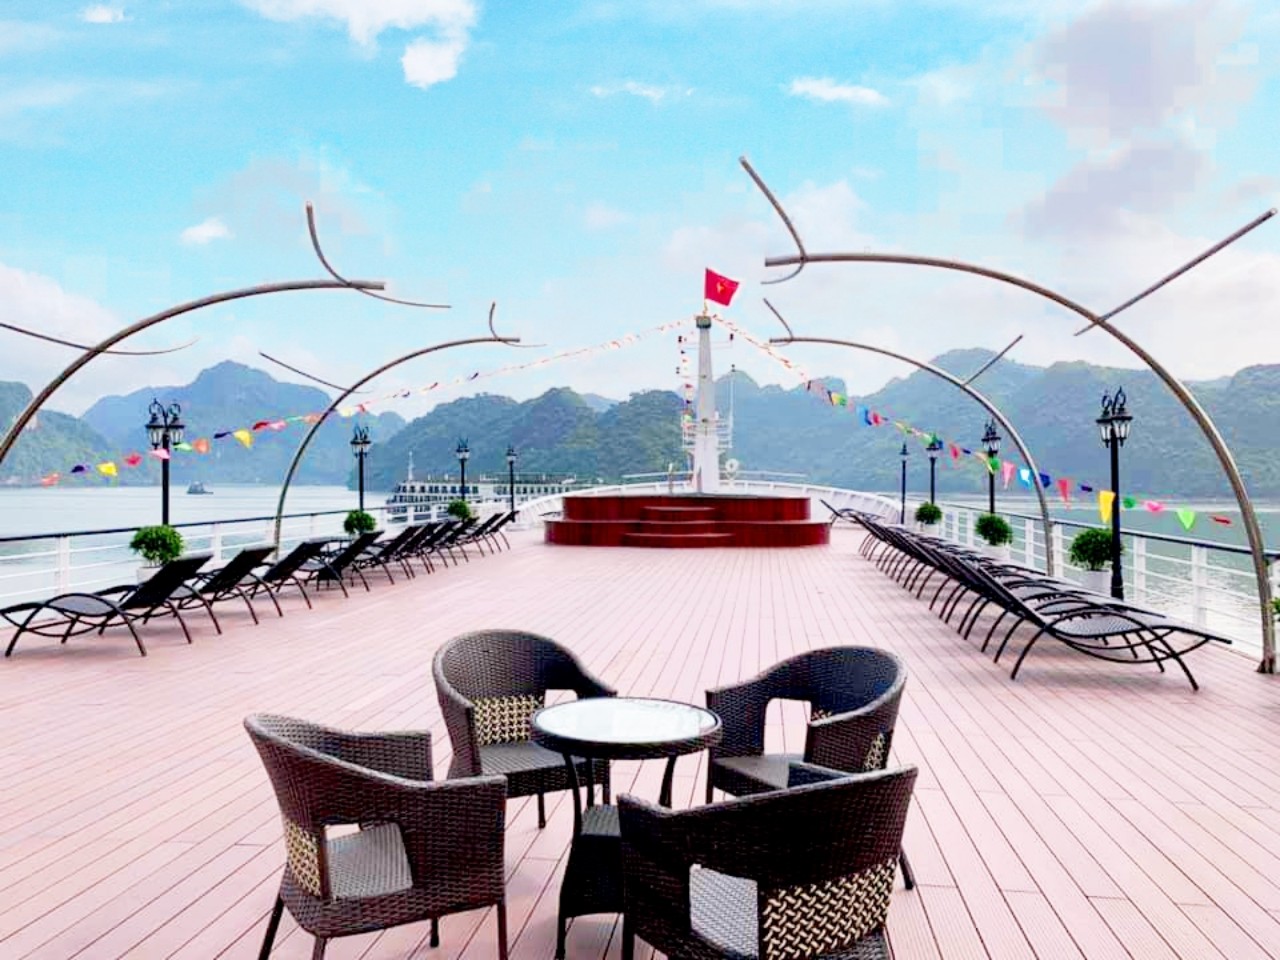 Ha Long Bay Aspira Cruise 3 Days 2 Night